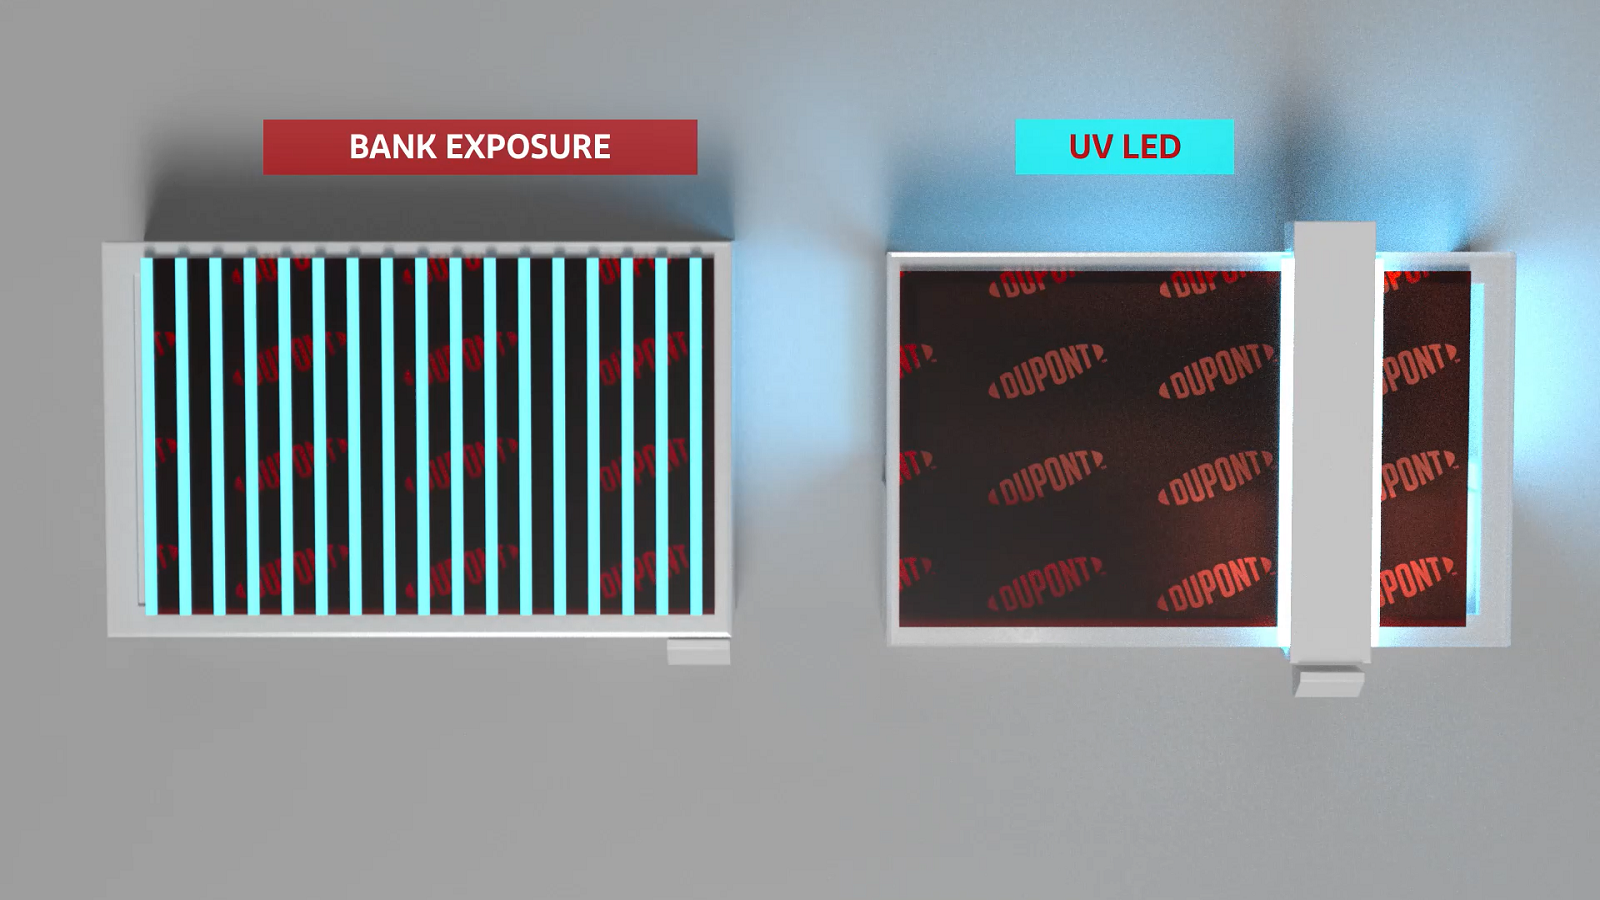 Convetional bank exposure unit versus UV-LED exposures